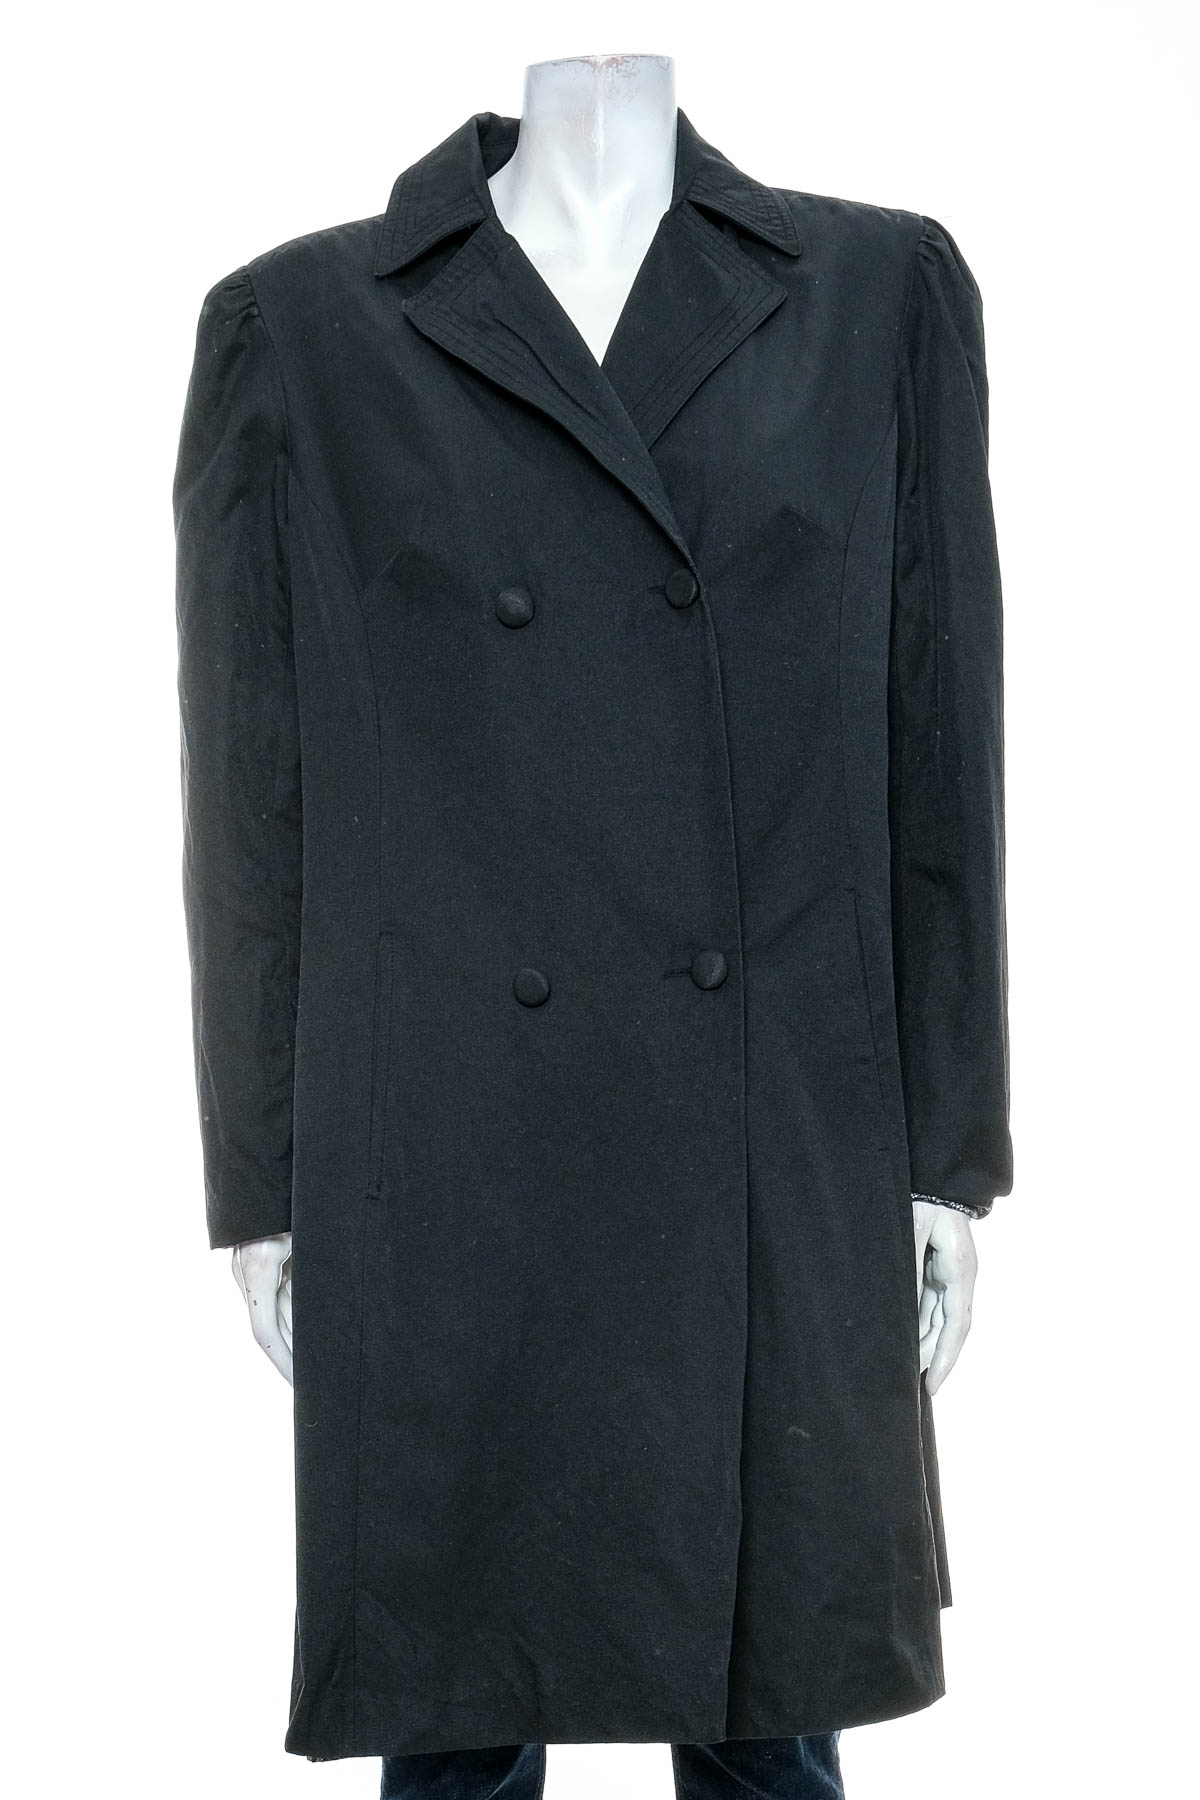 Γυναικείο παλτό - Behnaz Sarafpour for Target - 0